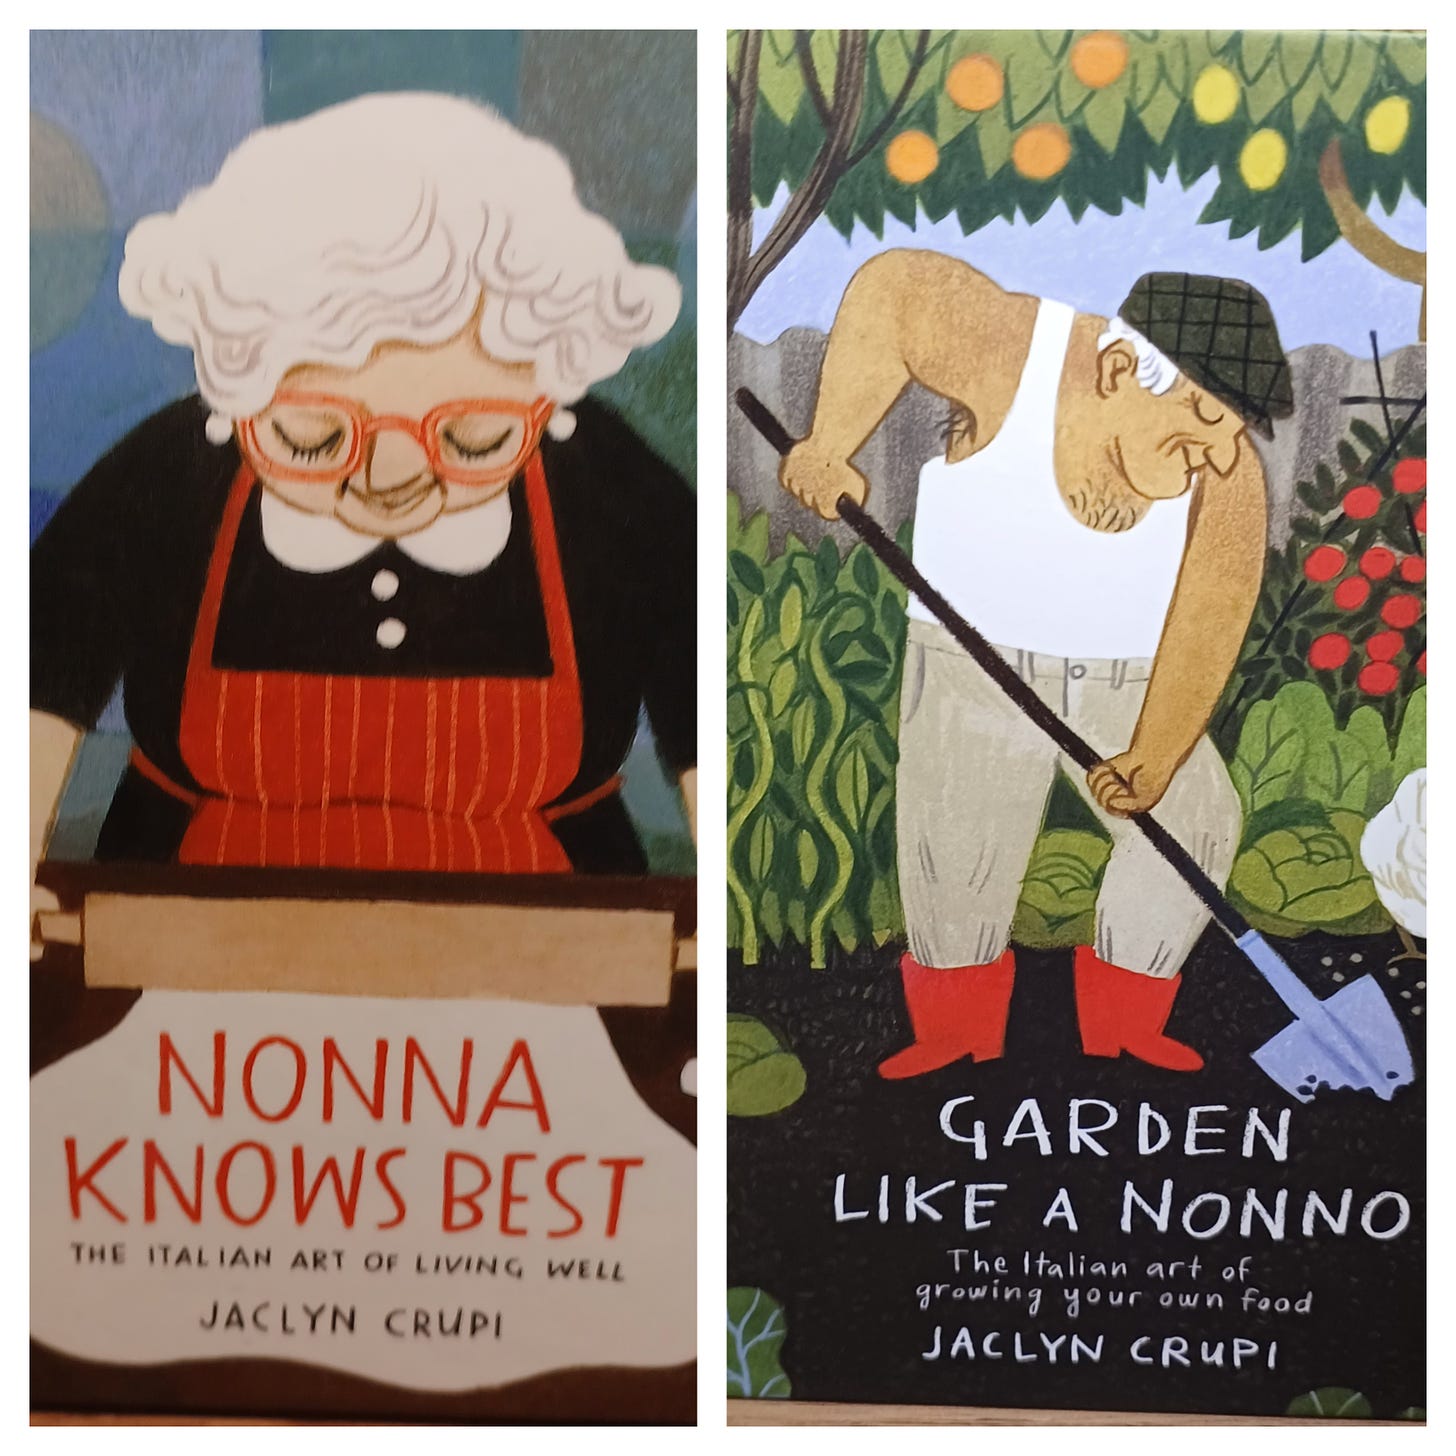 Le copertine di due libri di Jaclyn Cupri: Nonna Knows Best e Garden Like a Nonno. Nella prima, illustrazione di una nonna che stende la pasta con il mattarello. Nella seconda, un nonno con canottiera bianca e coppla che coltiva lattuche in giardino.